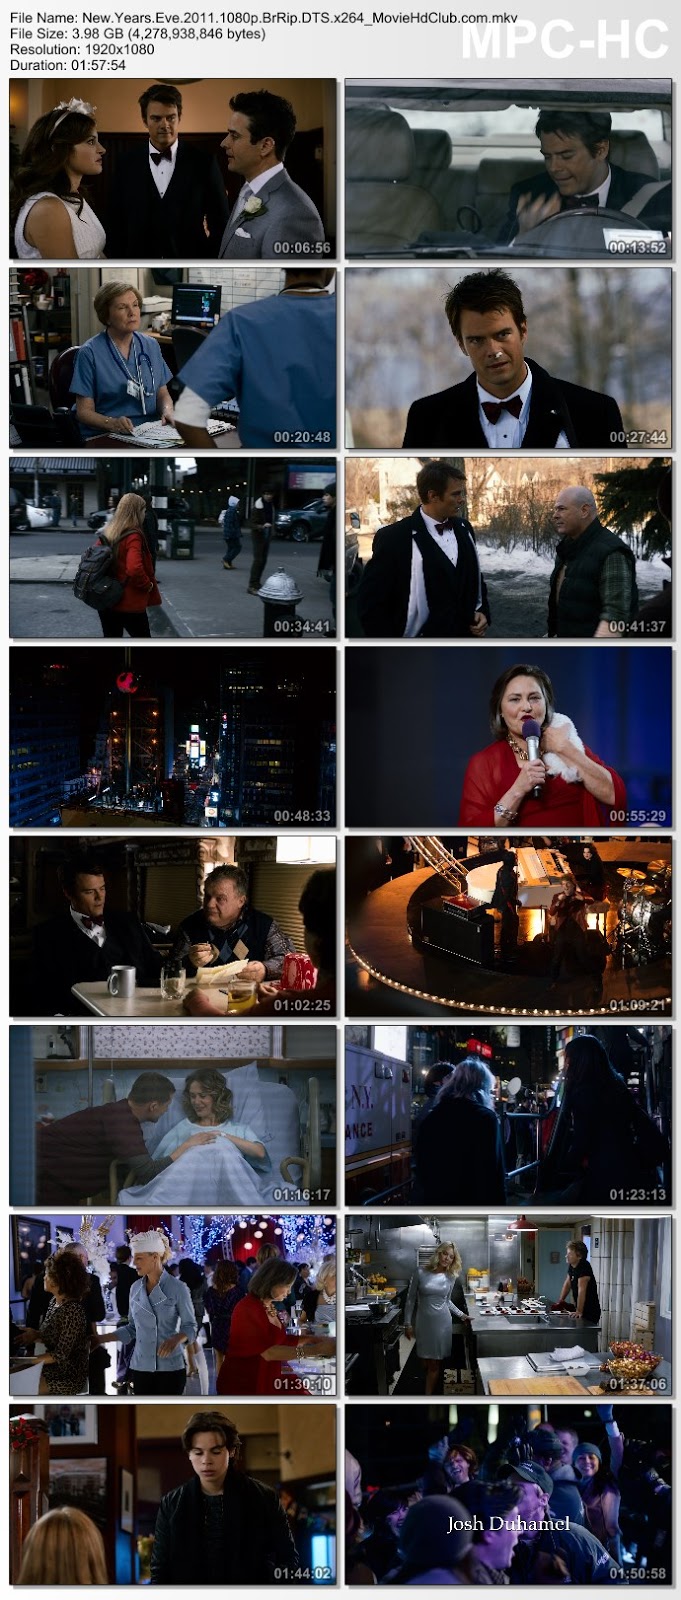 [Mini-HD] New Year’s Eve (2011) - นิว เยียร์ อีฟ [1080p][เสียง:ไทย 5.1/Eng DTS][ซับ:ไทย/Eng][.MKV][3.99GB] NY_MovieHdClub_SS